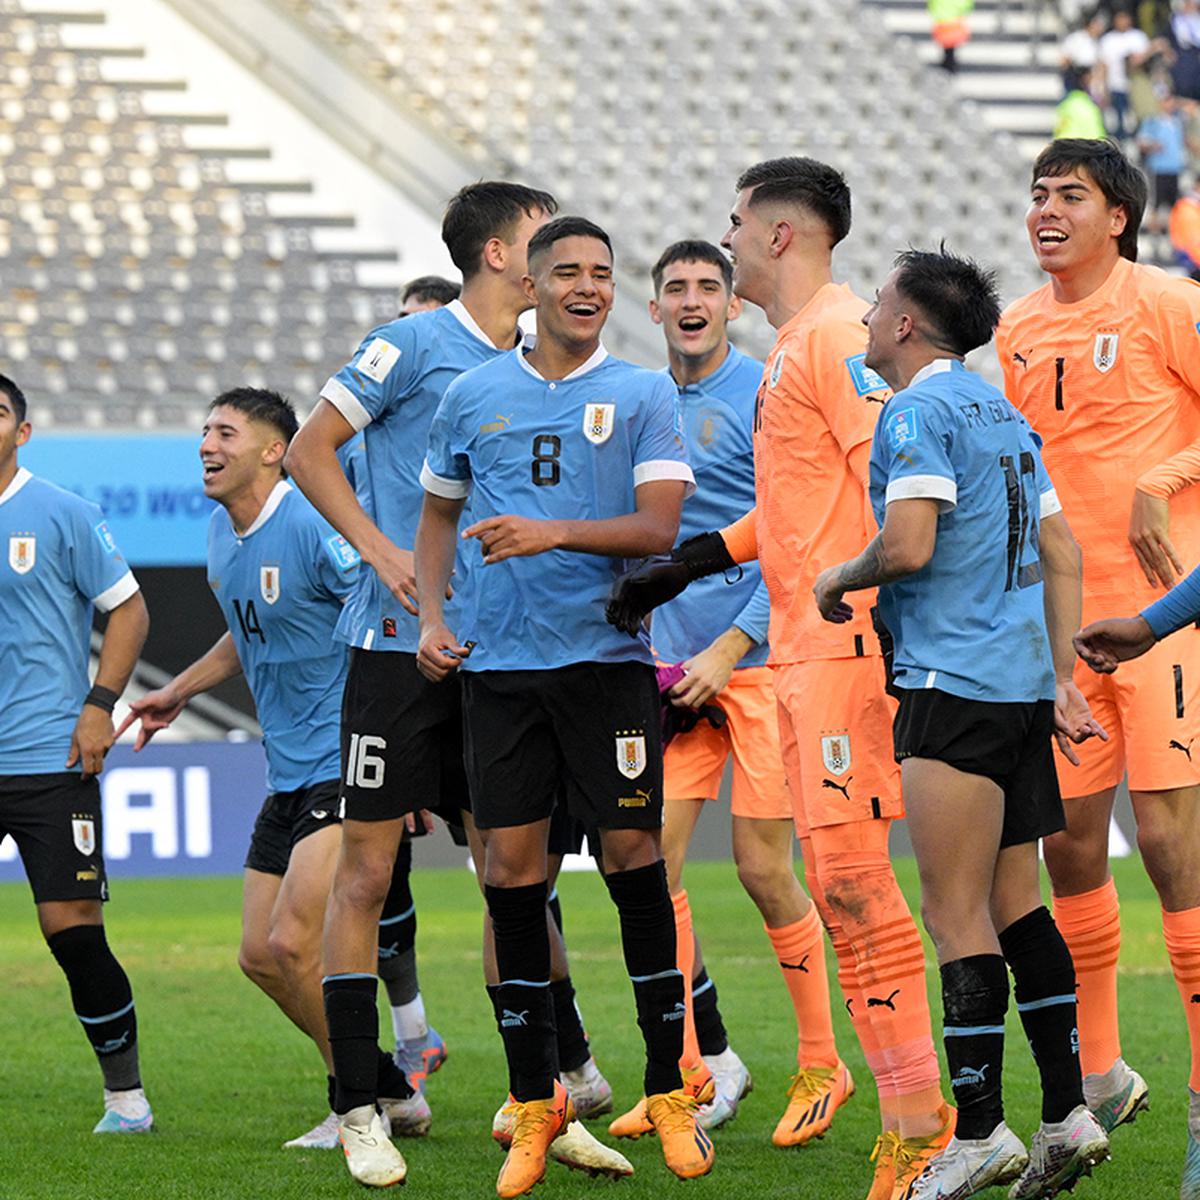 Dónde ver a Uruguay vs Italia en la final del Mundial sub 20 hoy: el partido  irá por TV abierta, por cable y streaming